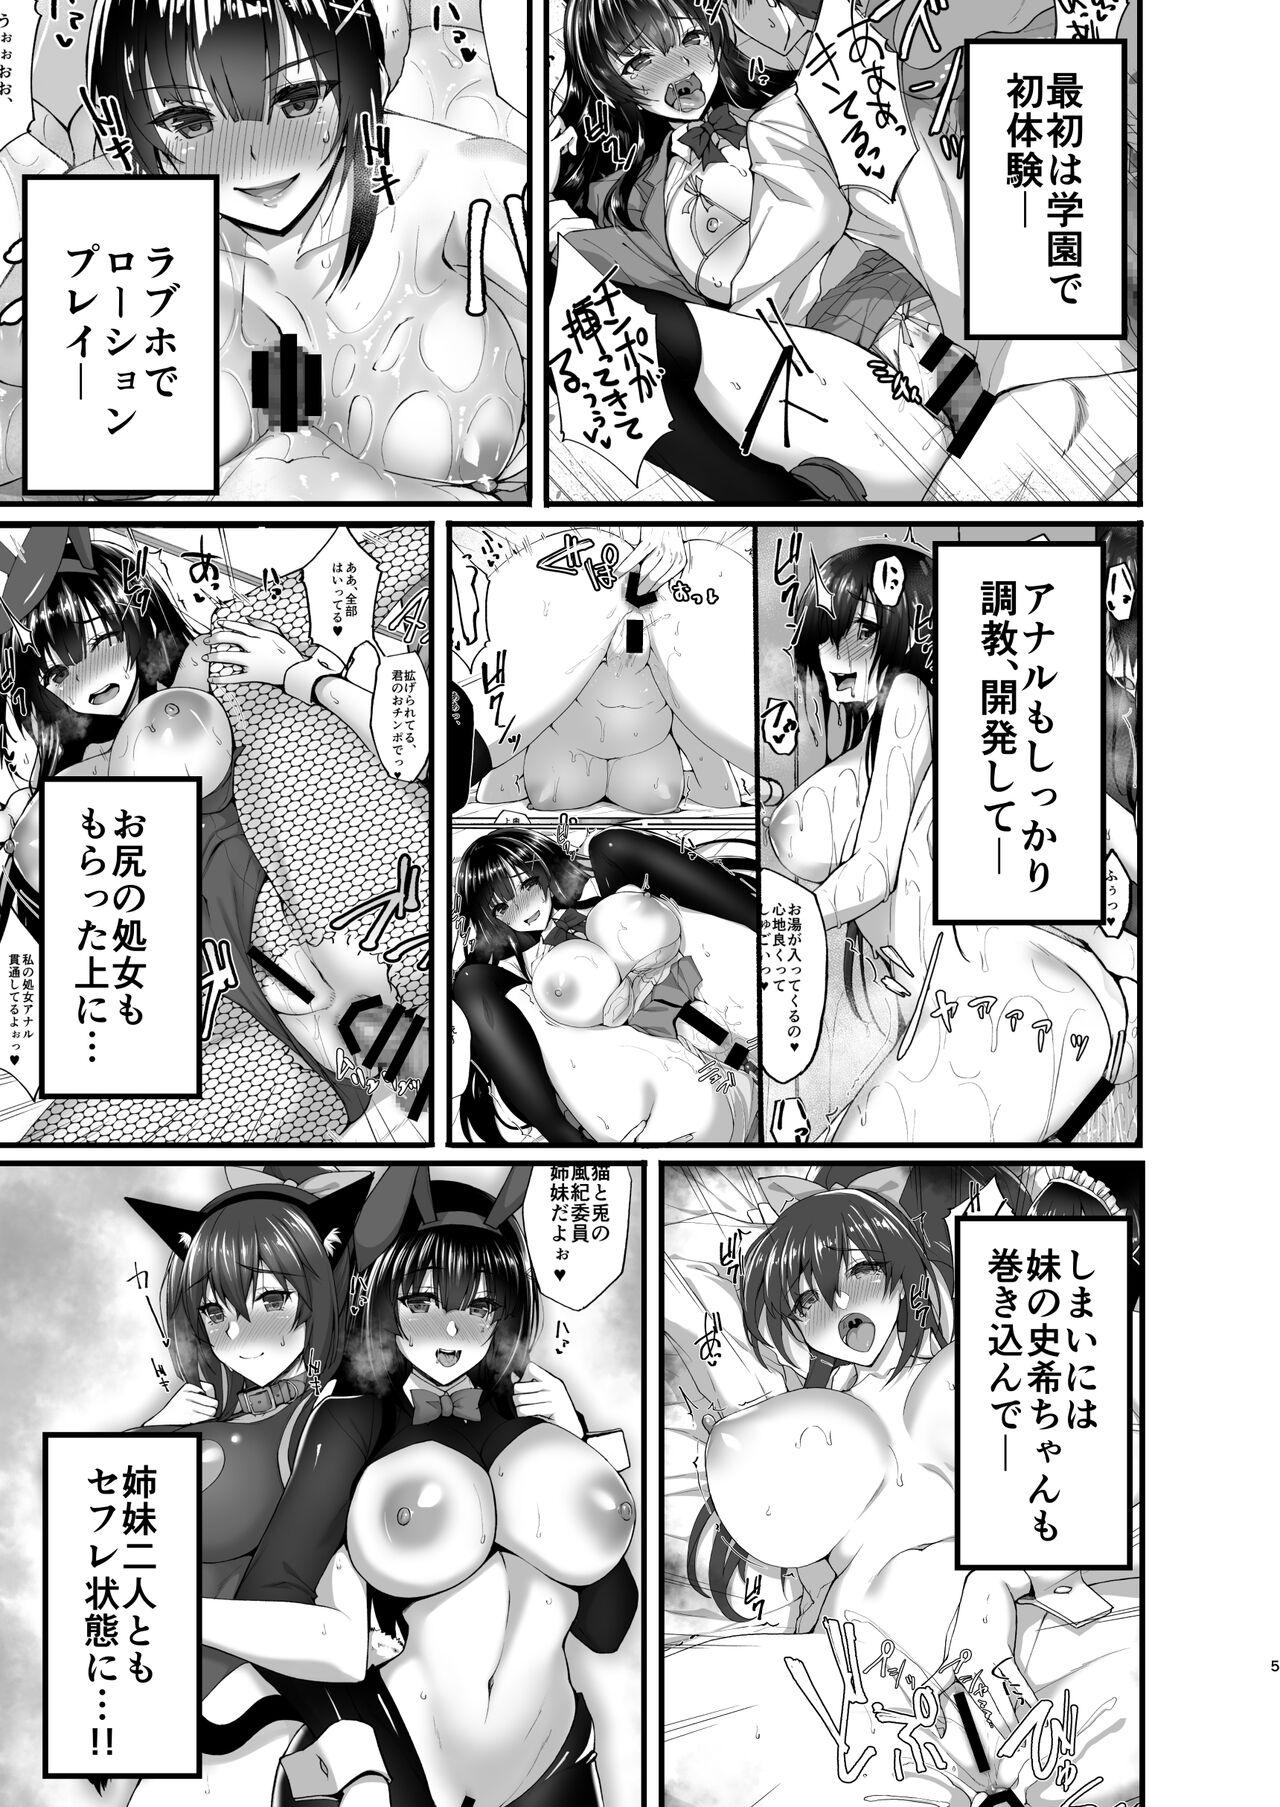 Solo Girl Chishojo Fuuki Iin no Minna ni Ienai Inbi na Onegai 6 - Original Gemidos - Page 5